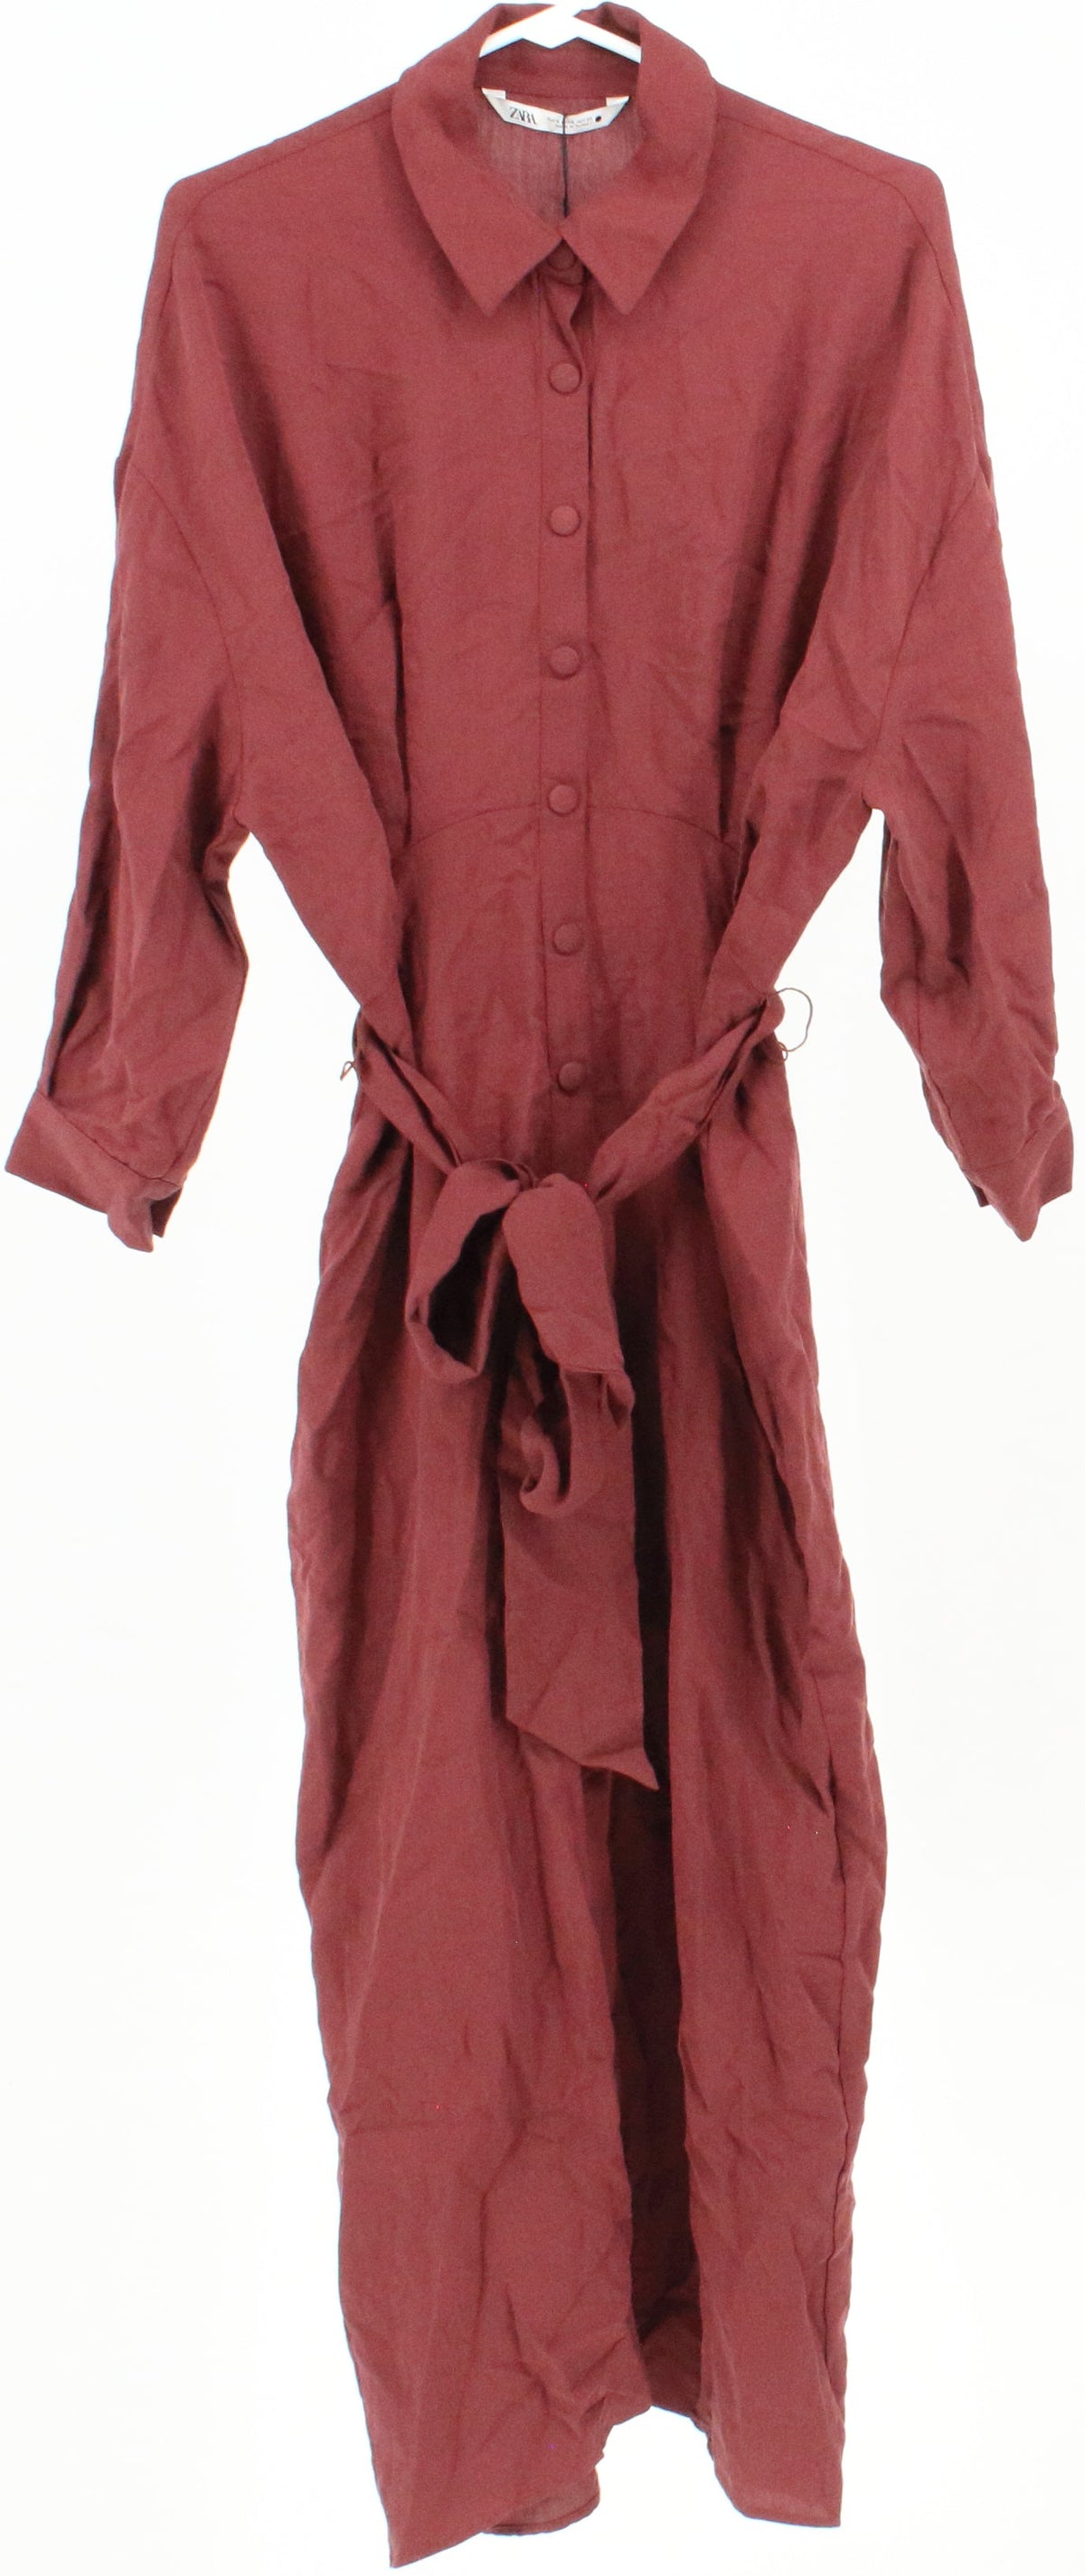 Zara Burgundy Long Dress